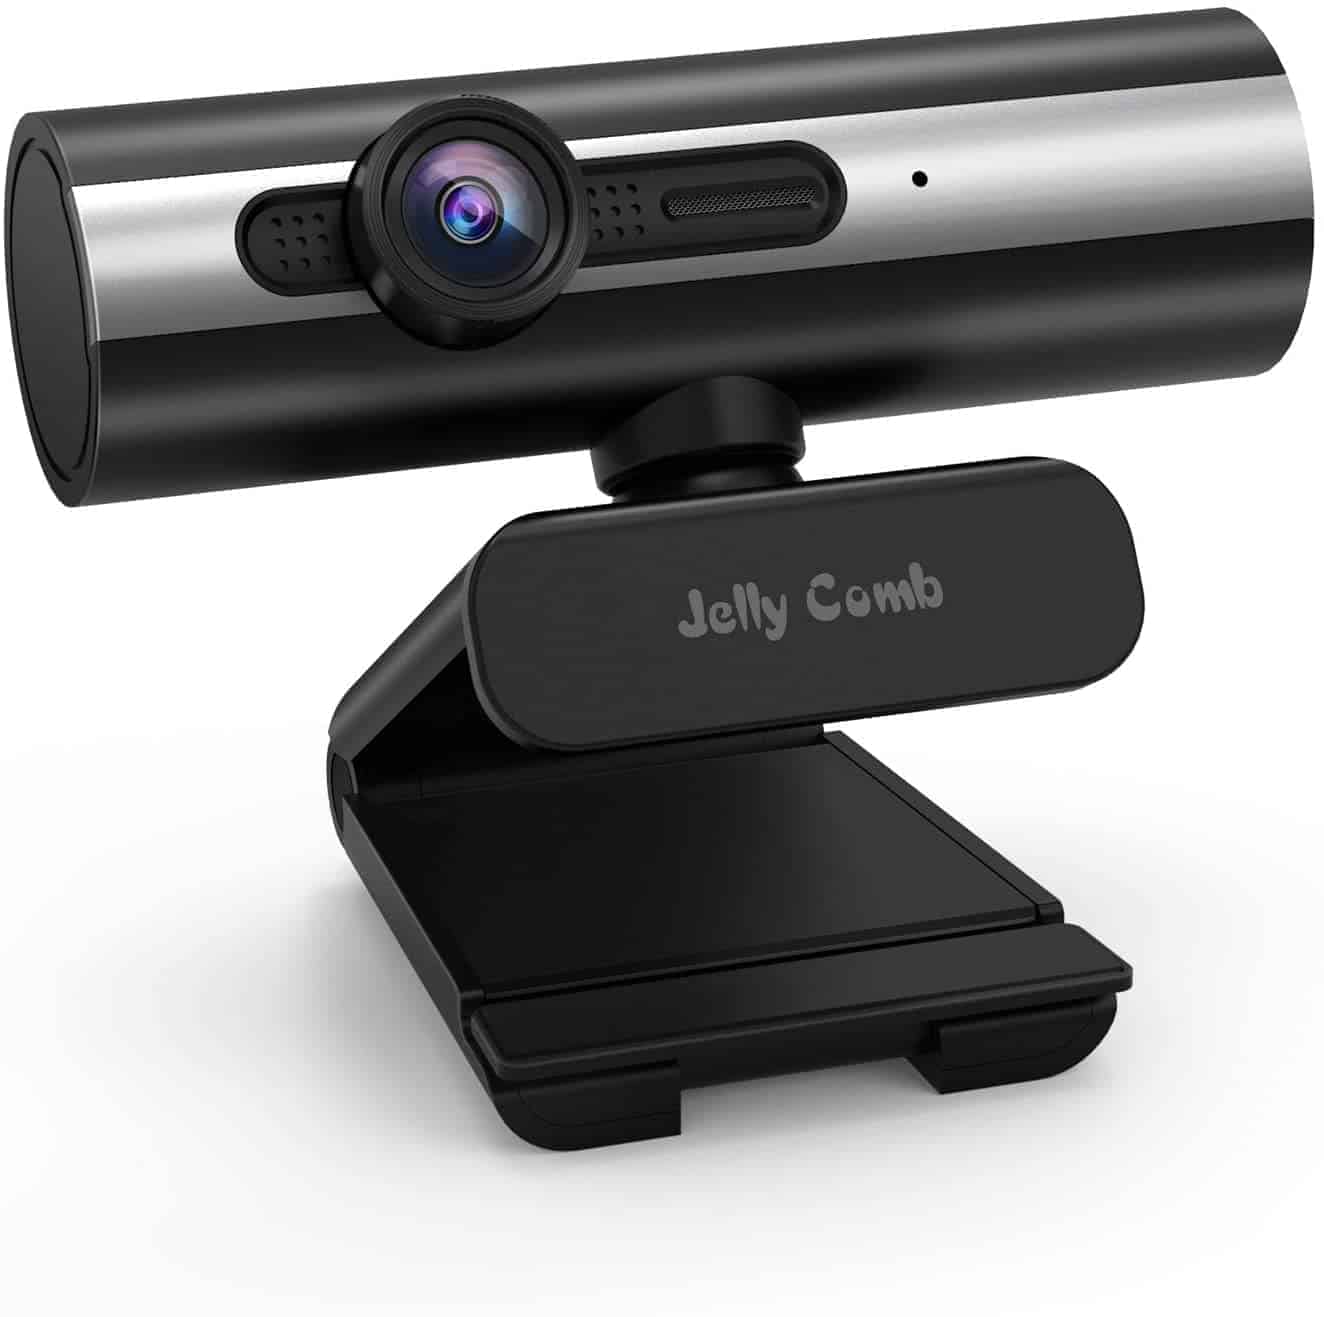 Top 10 Best Webcams in 2021 Reviews